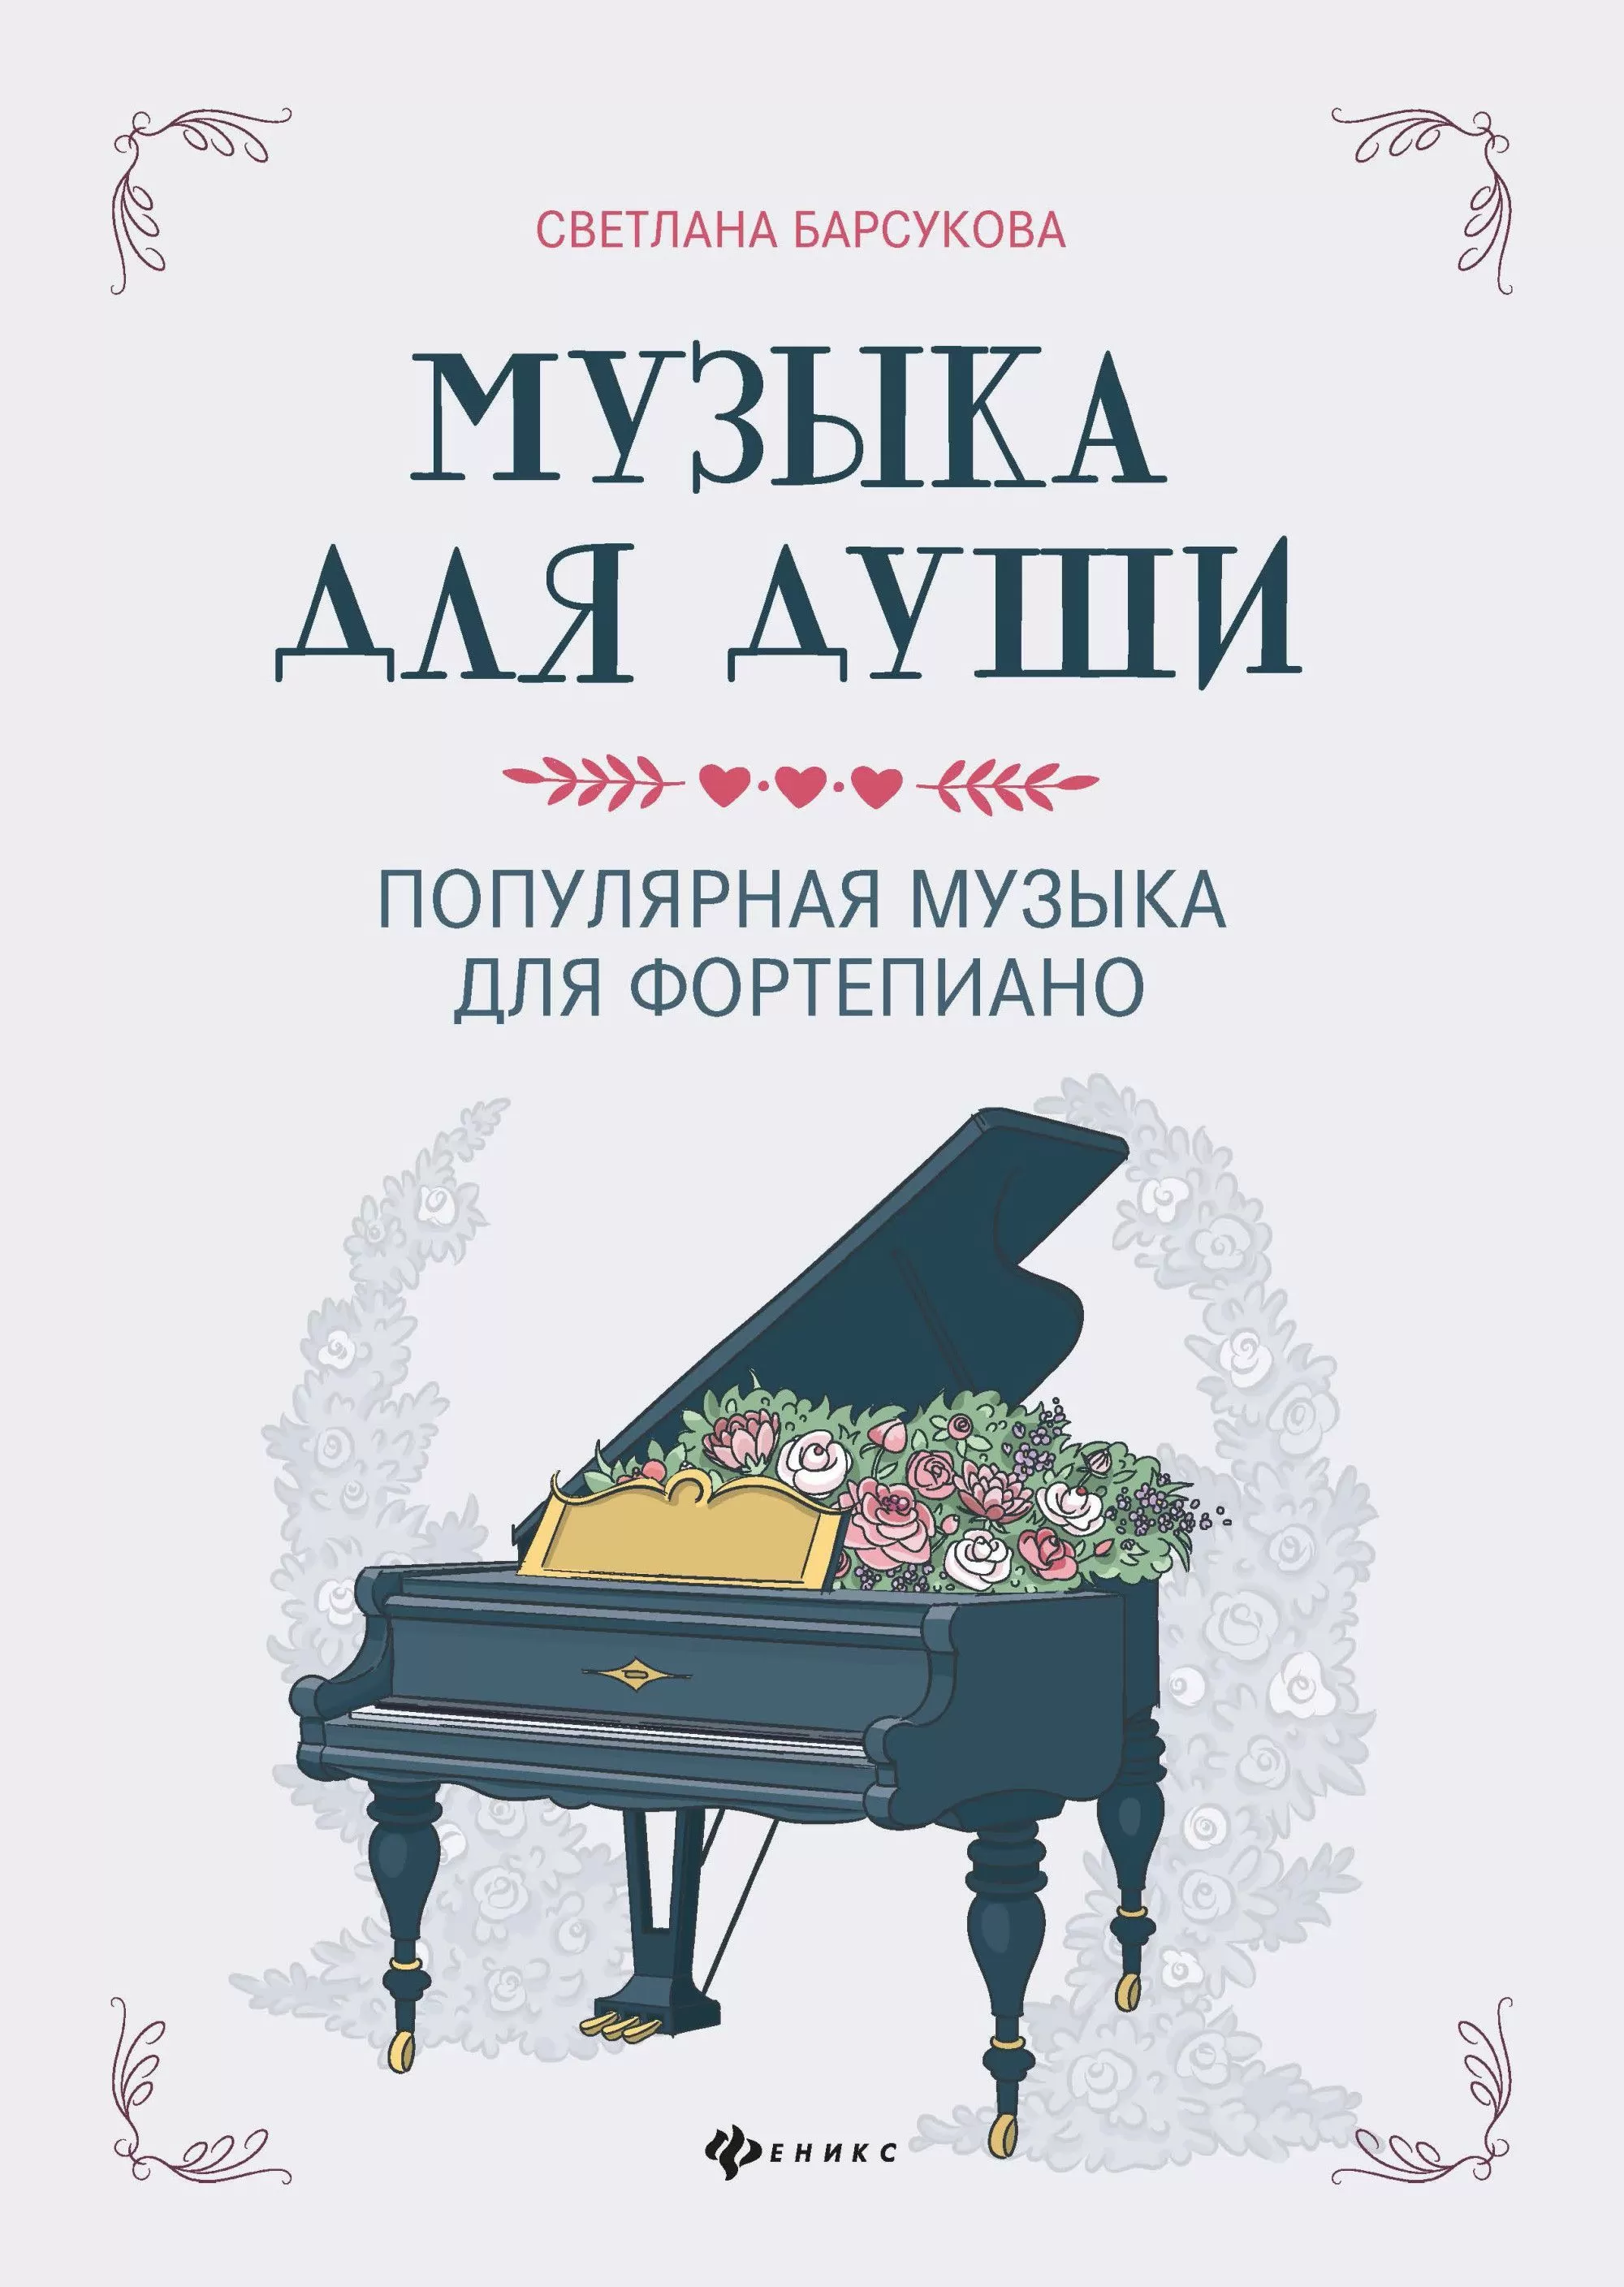 Музыка для души:популярная музыка для фортепиано - купить в магазине Кассандра, фото, 9790660036754, 